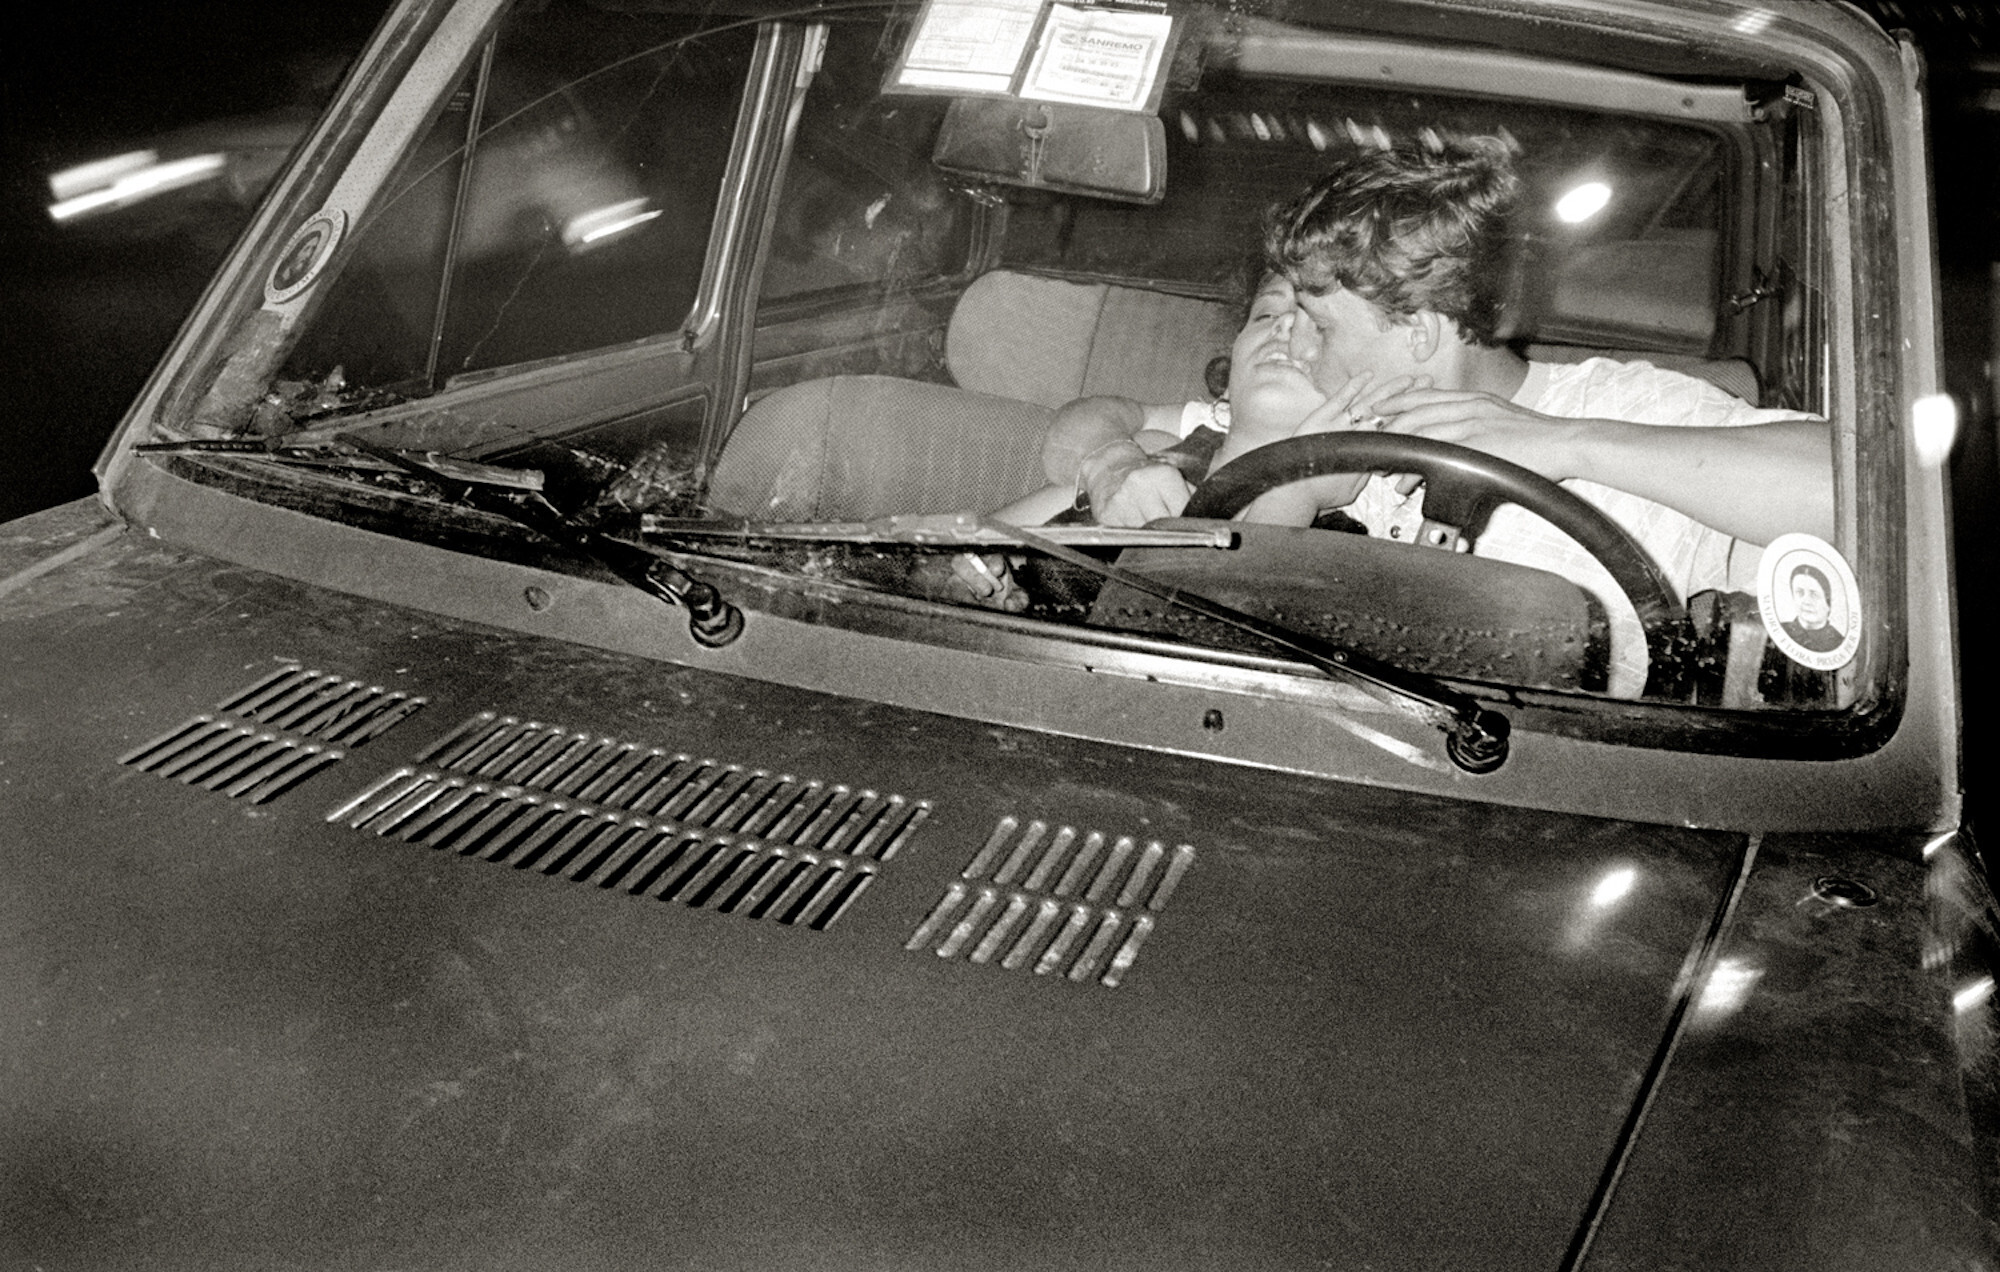 Couplein Car, Неаполь, 1986 год. Фотограф Альберт Уотсон